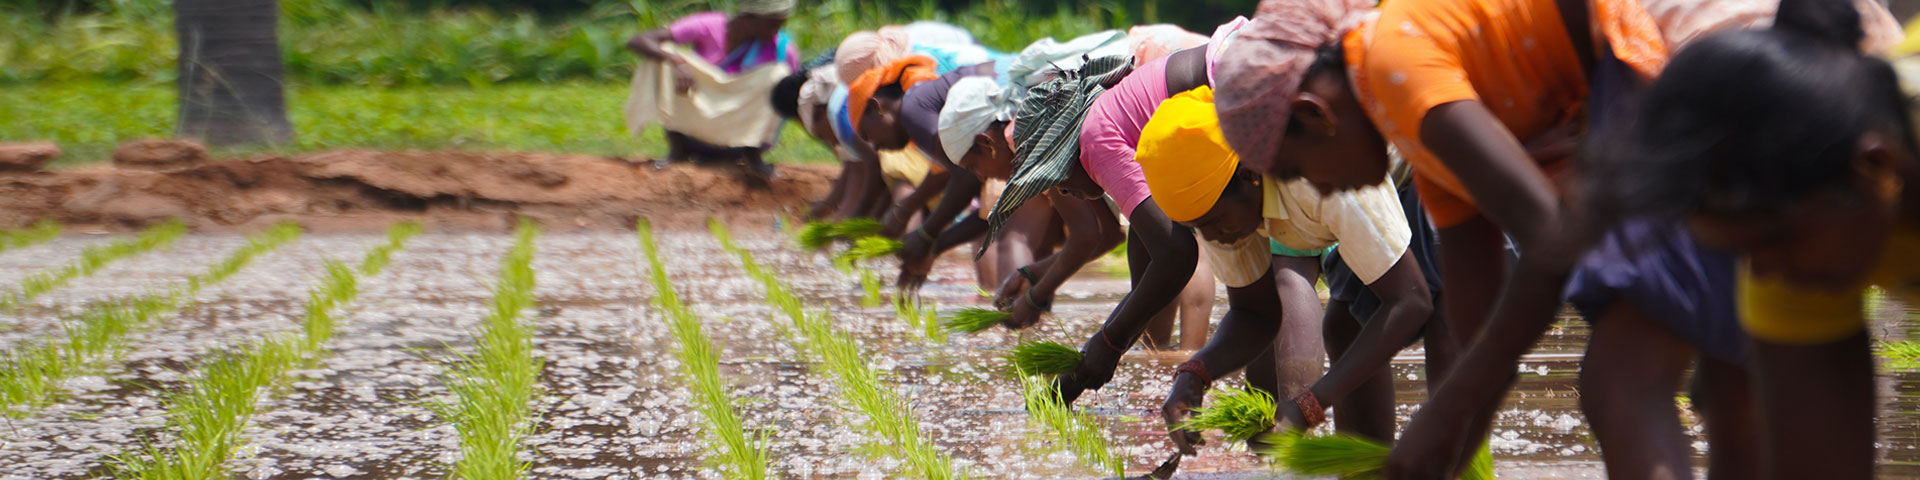 Feldarbeiter*innen pflanzen Reis an.